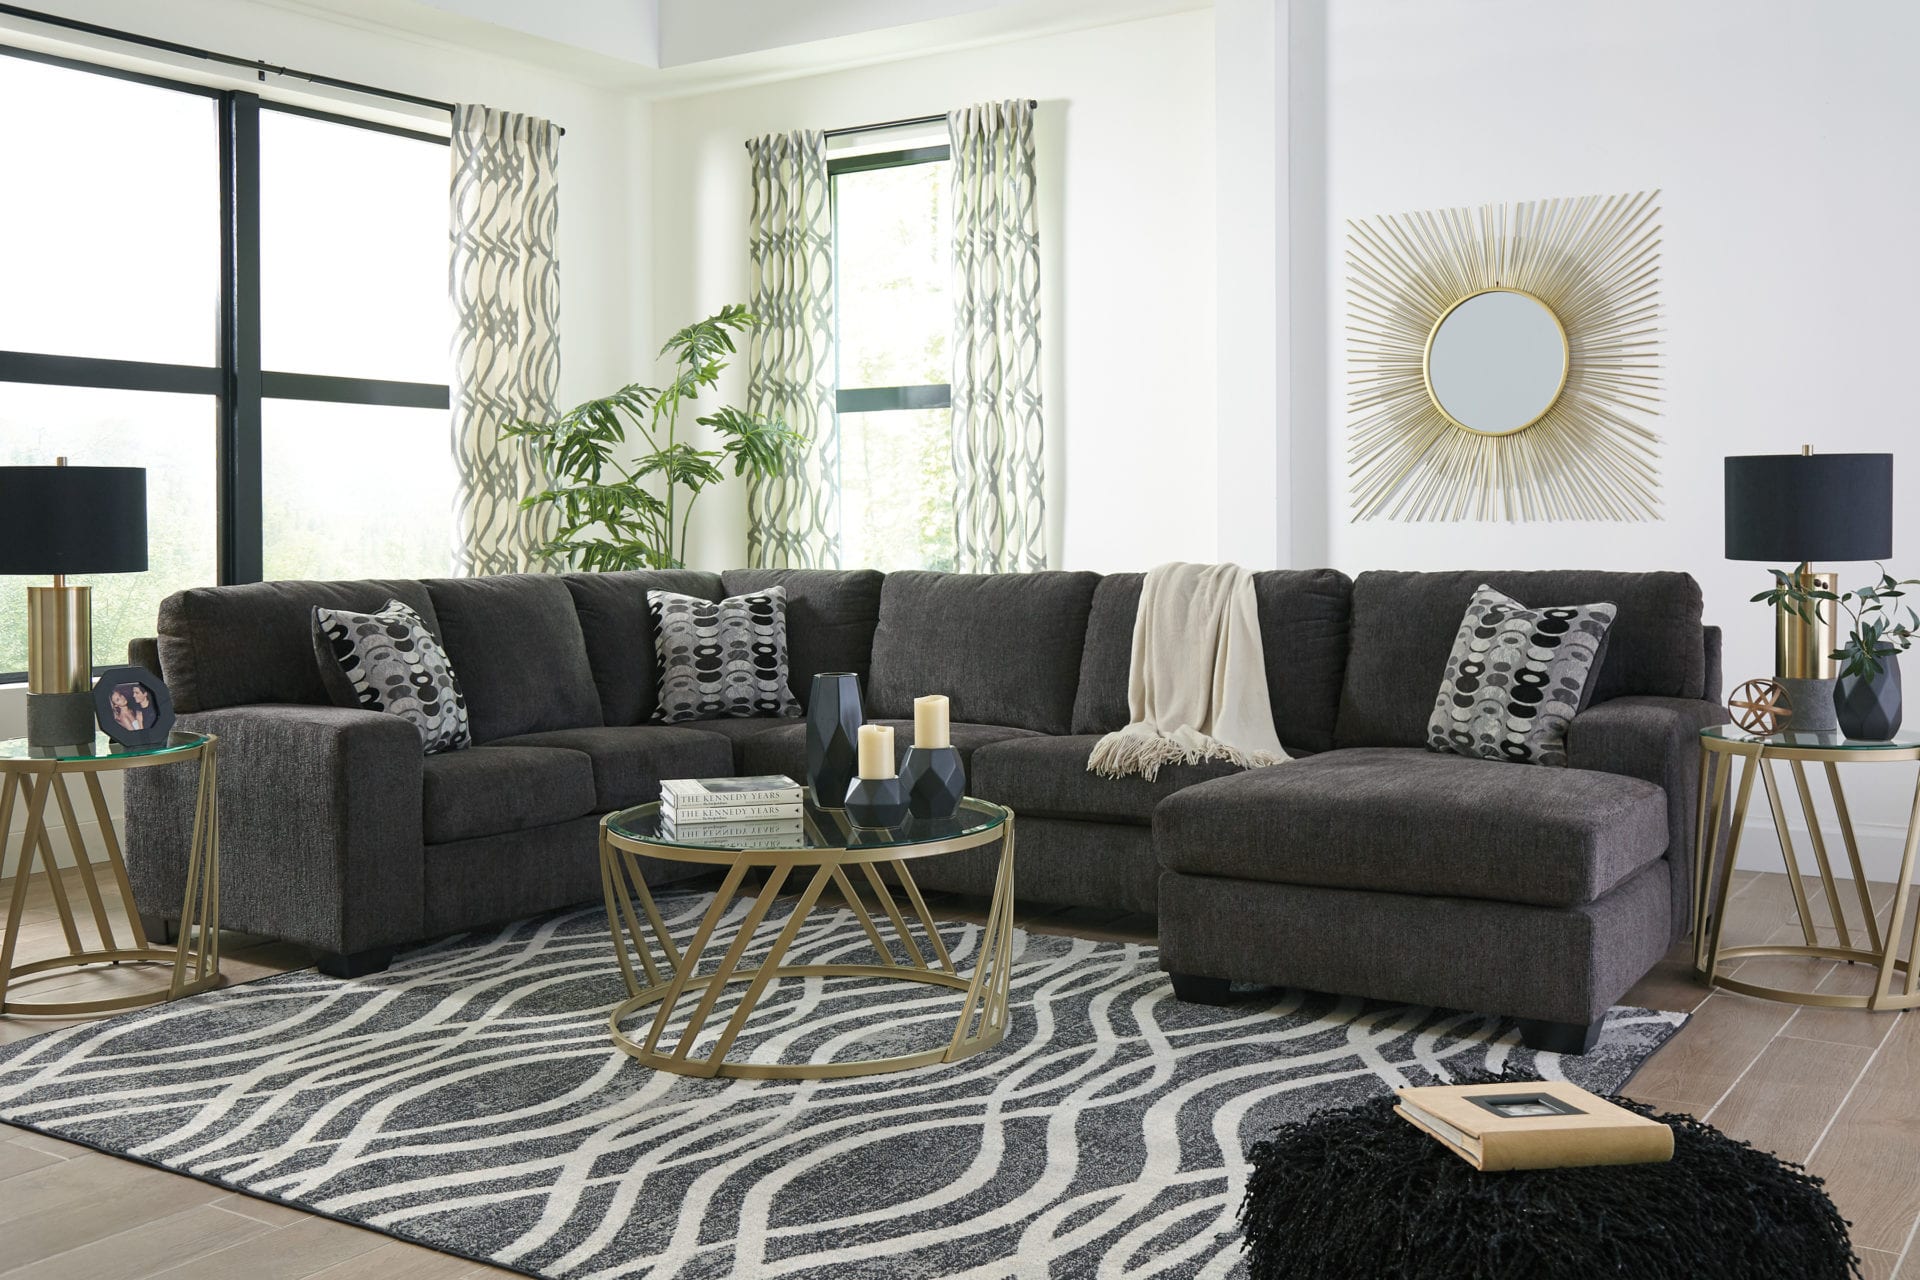 Living Room Total Furniture